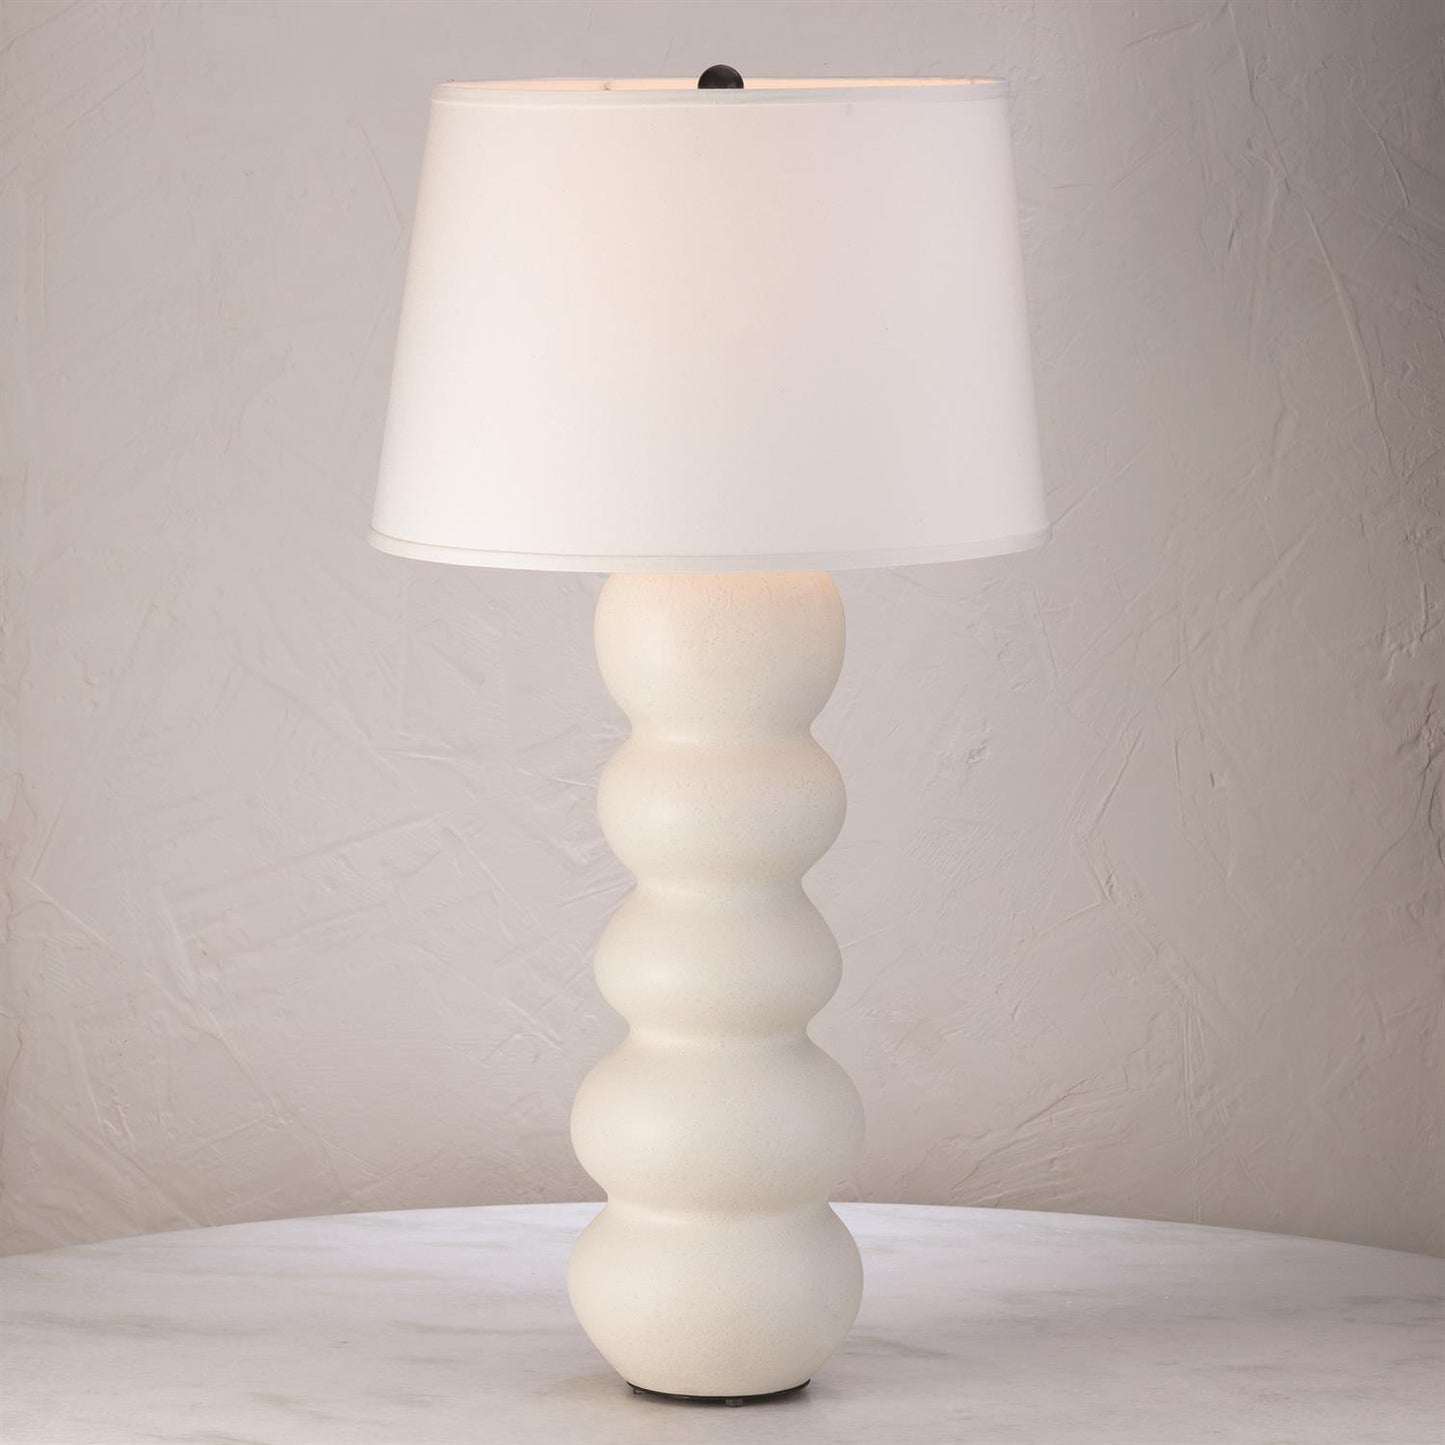 Catrano Lamp - Matte White - Grats Decor Interior Design & Build Inc.